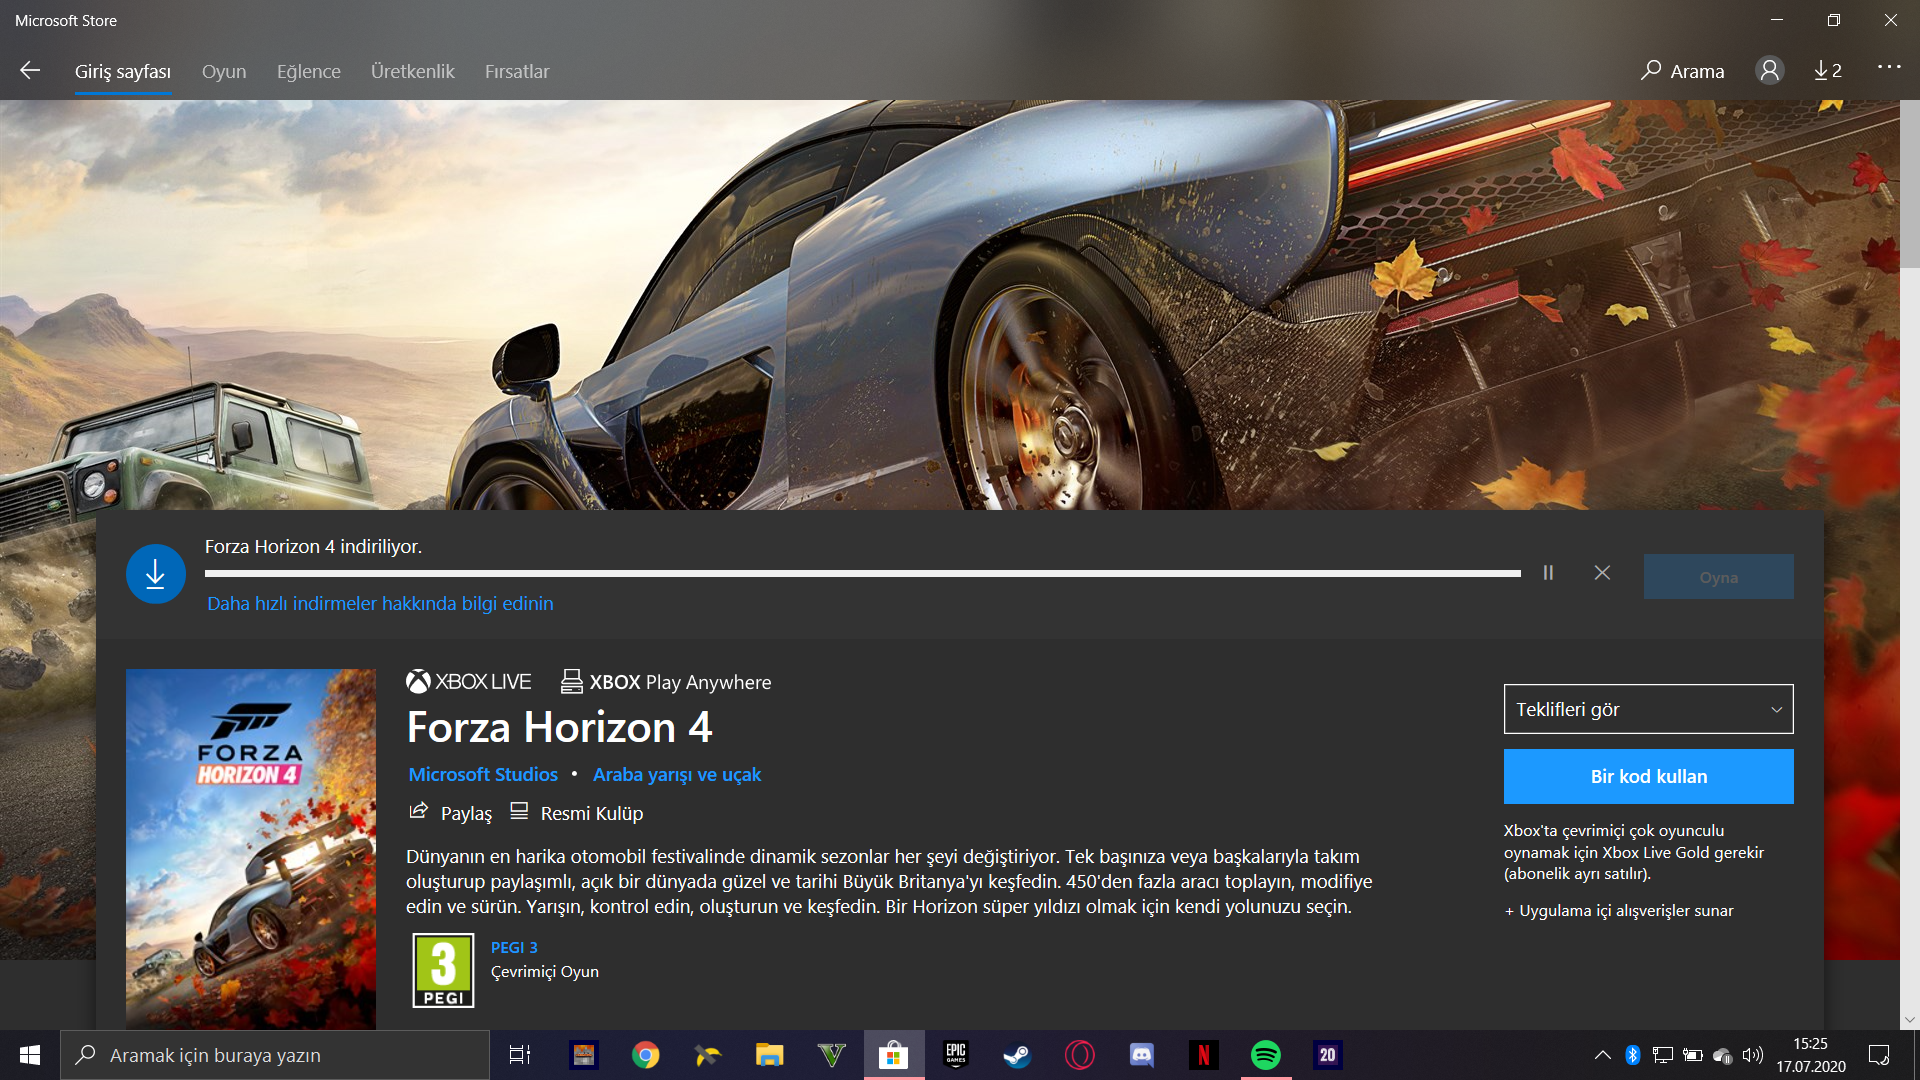 Forza horizon 5: амбар находки, места на карте, подарки и способы разблокировки спрятанных машин - все топовые игровые новости, обзоры и руководства на одном сайте.